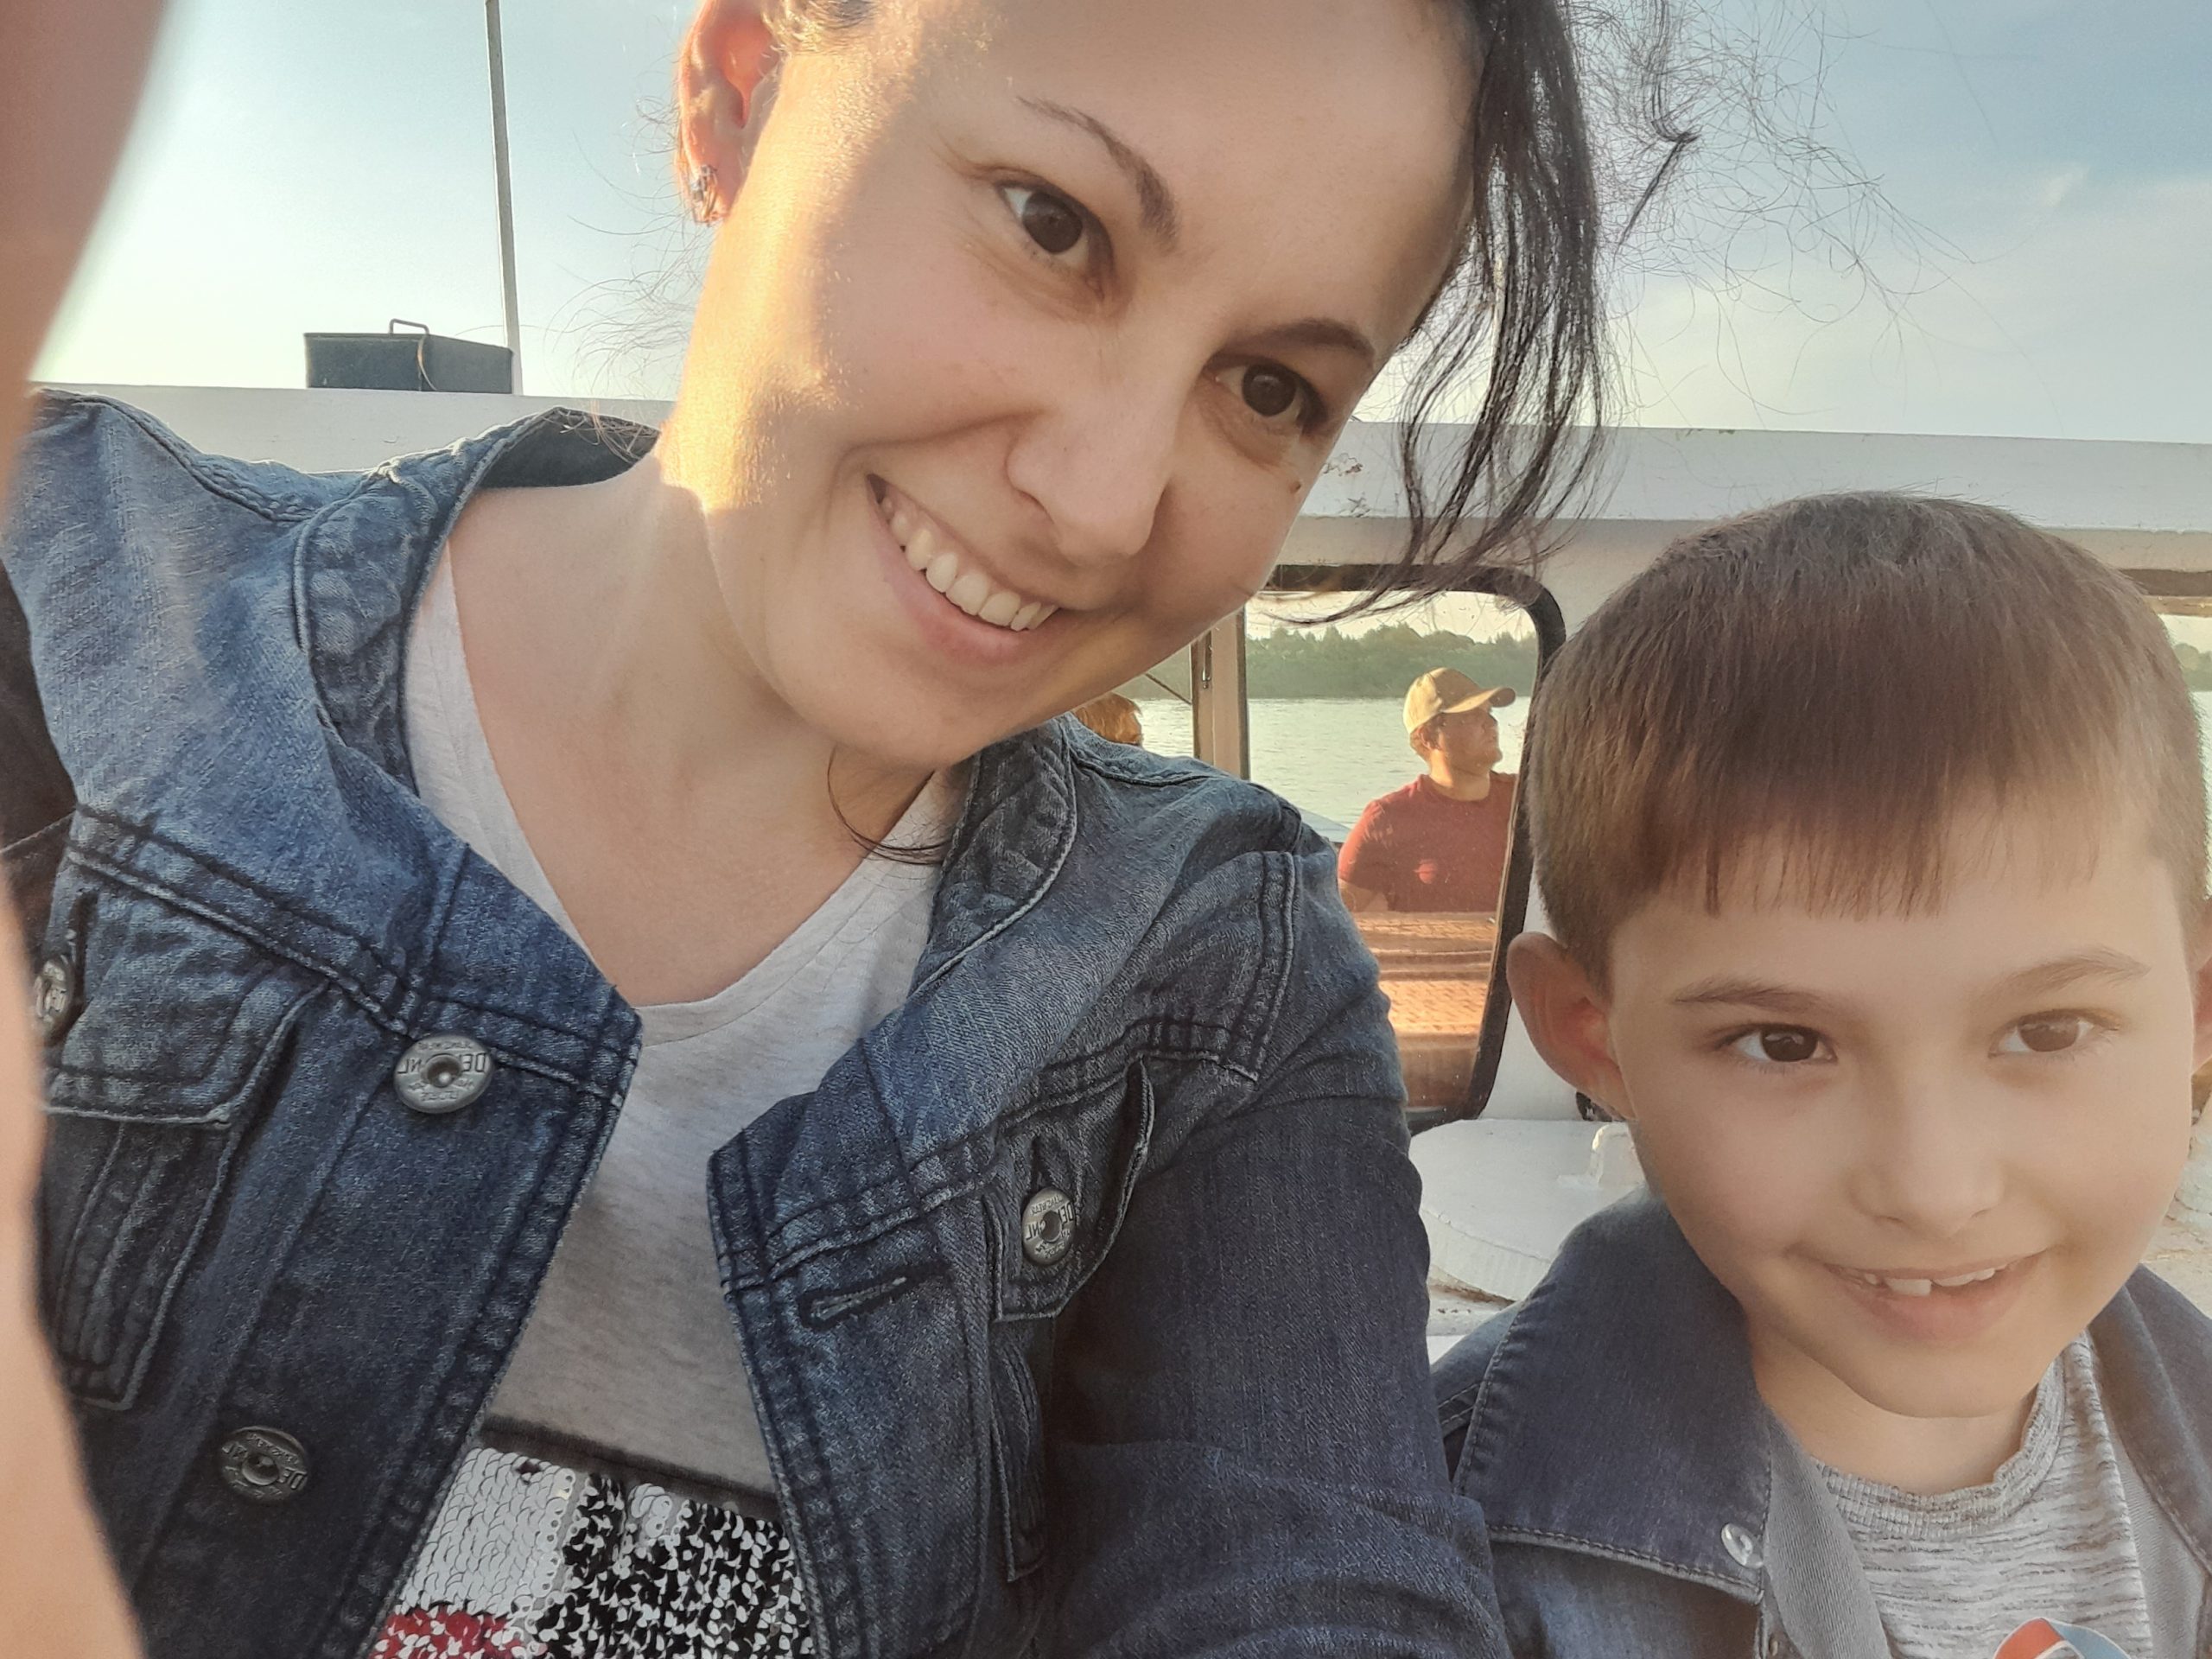 Слёзы облегчения и счастливые дети: как в Кемерове «перезагружают» уставших мам  